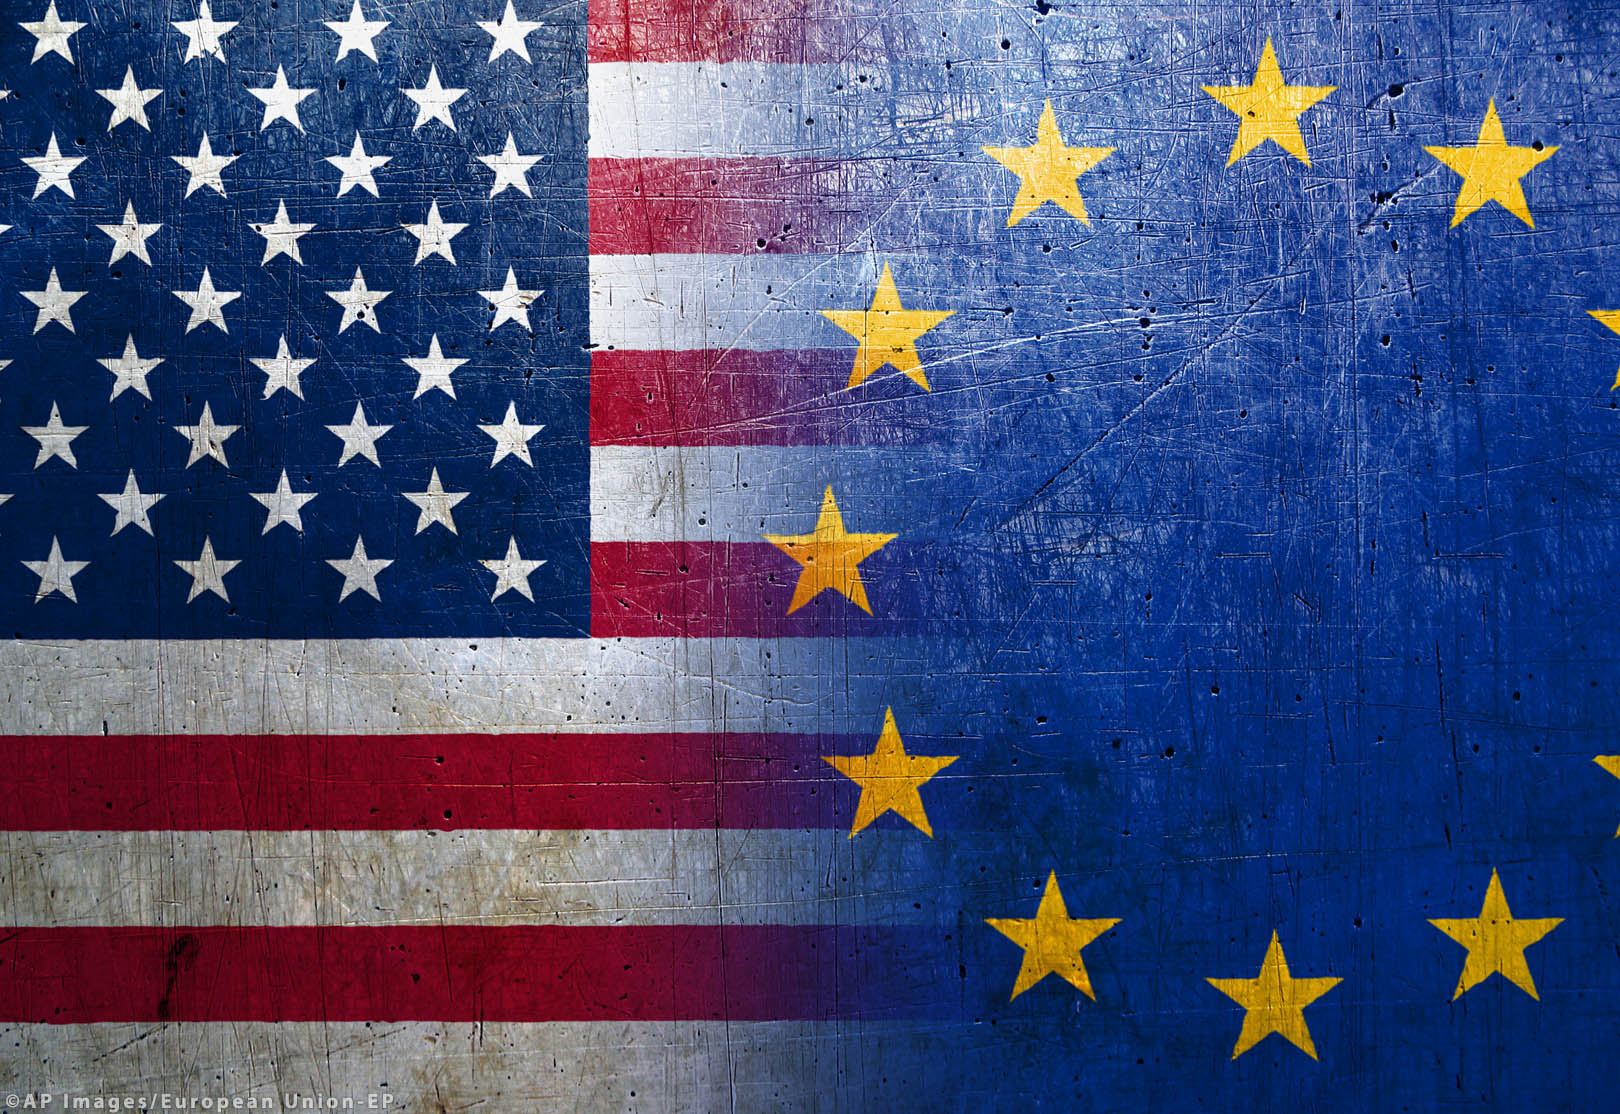 Statele UE ar putea interzice accesul americanilor în Europa